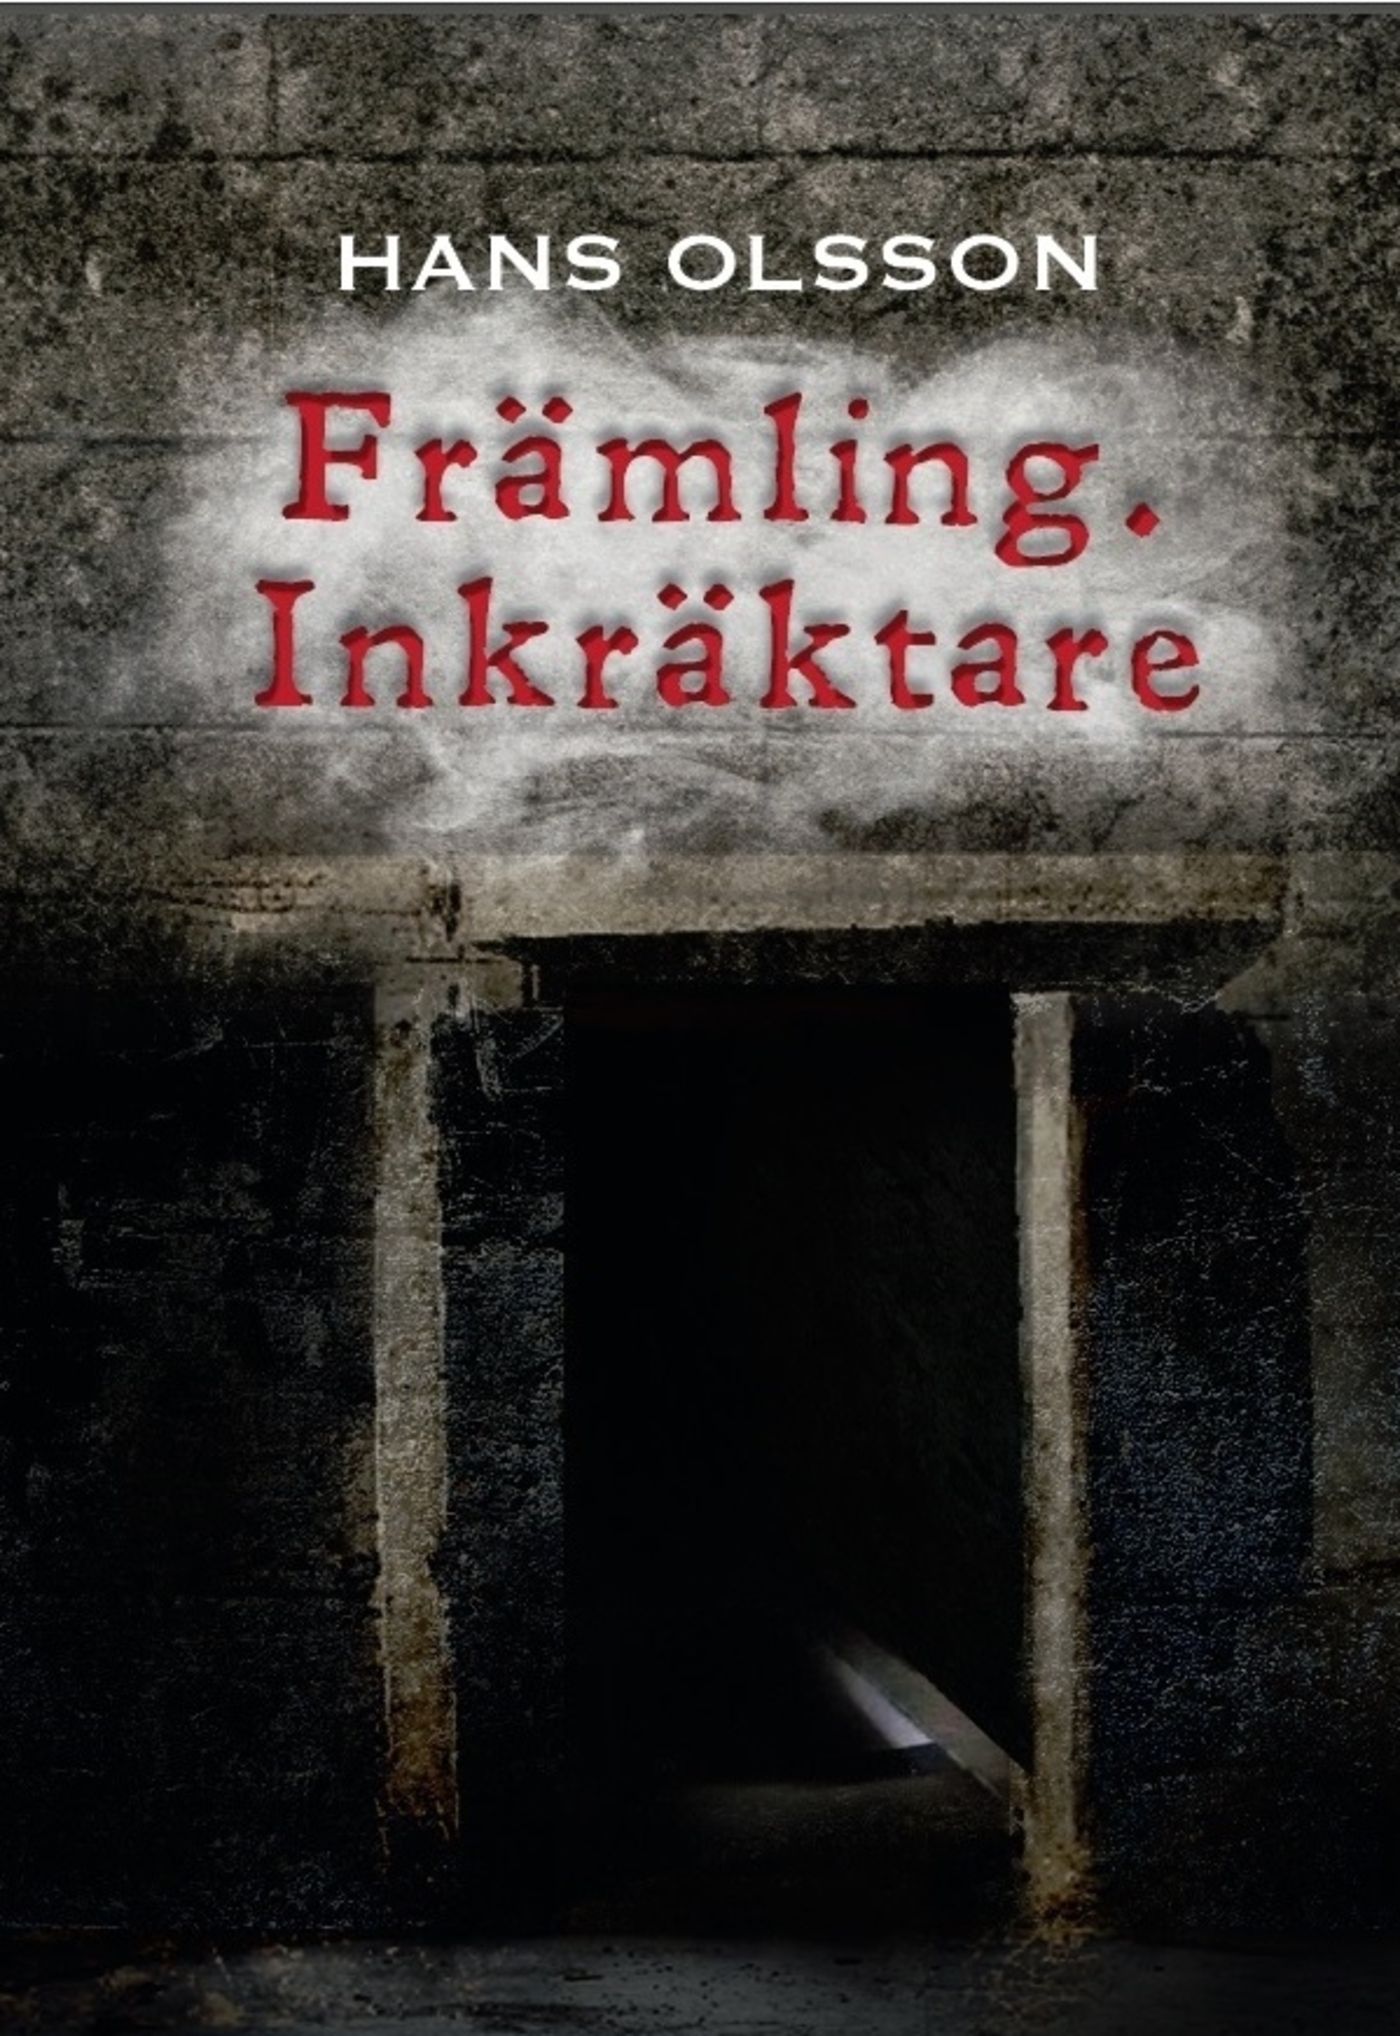 Främling. Inkräktare, eBook by Hans Olsson